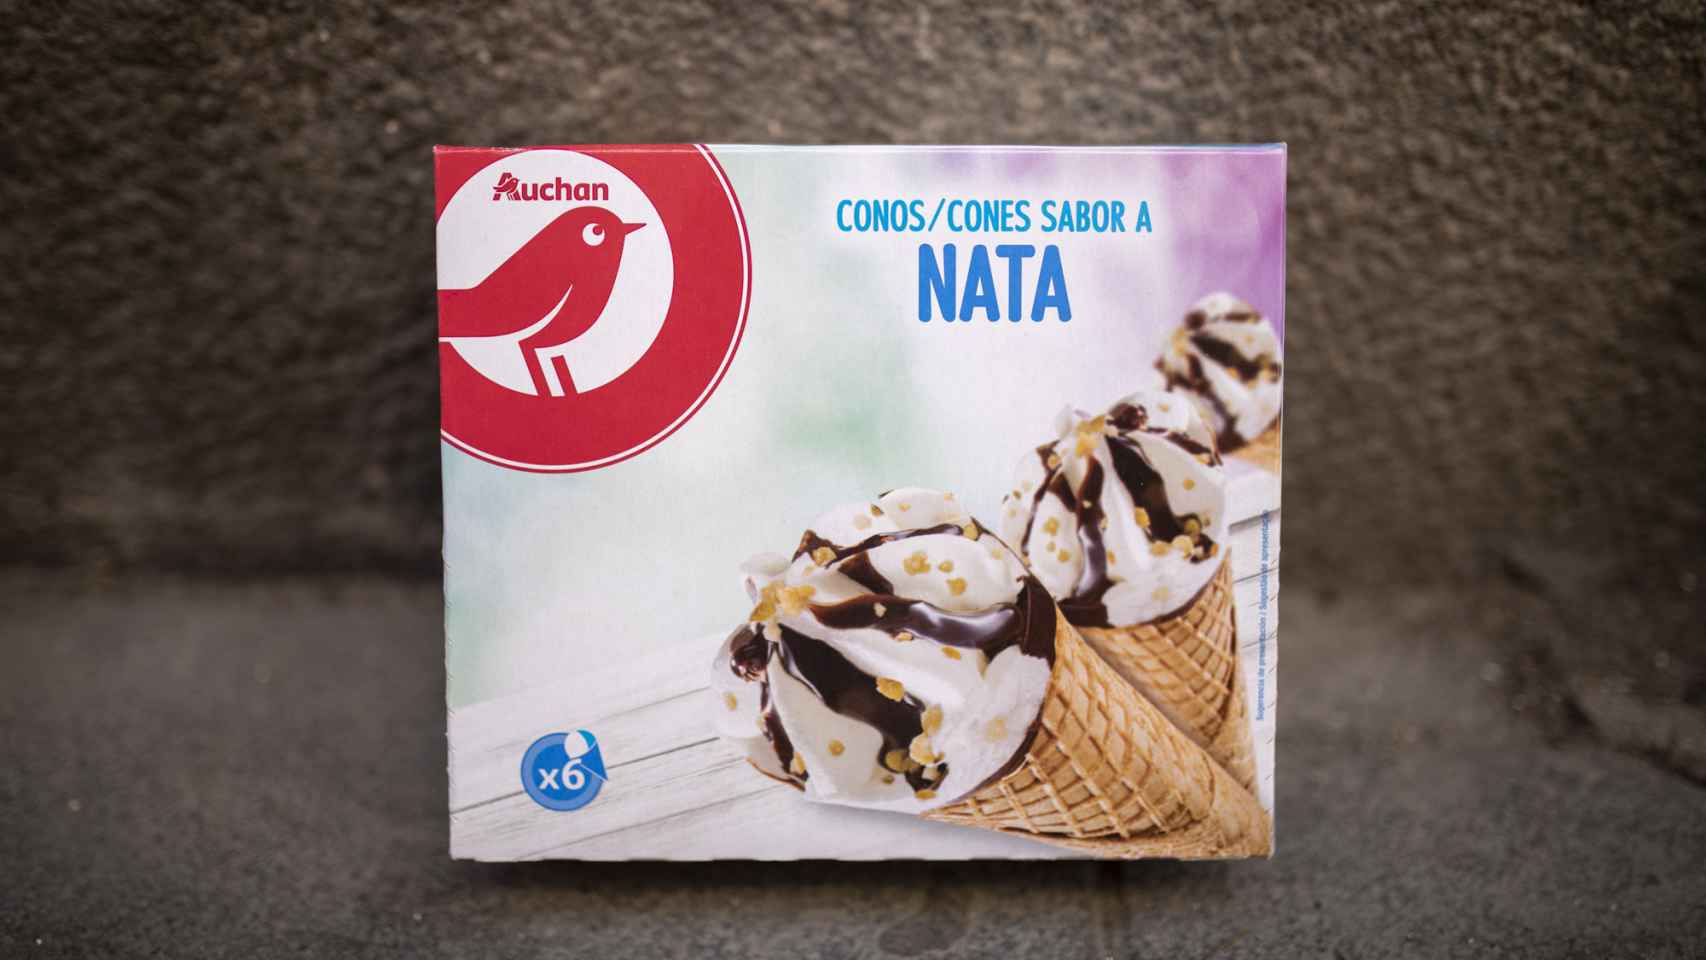 La caja de conos de nata de Auchan, la marca blanca de Alcampo.